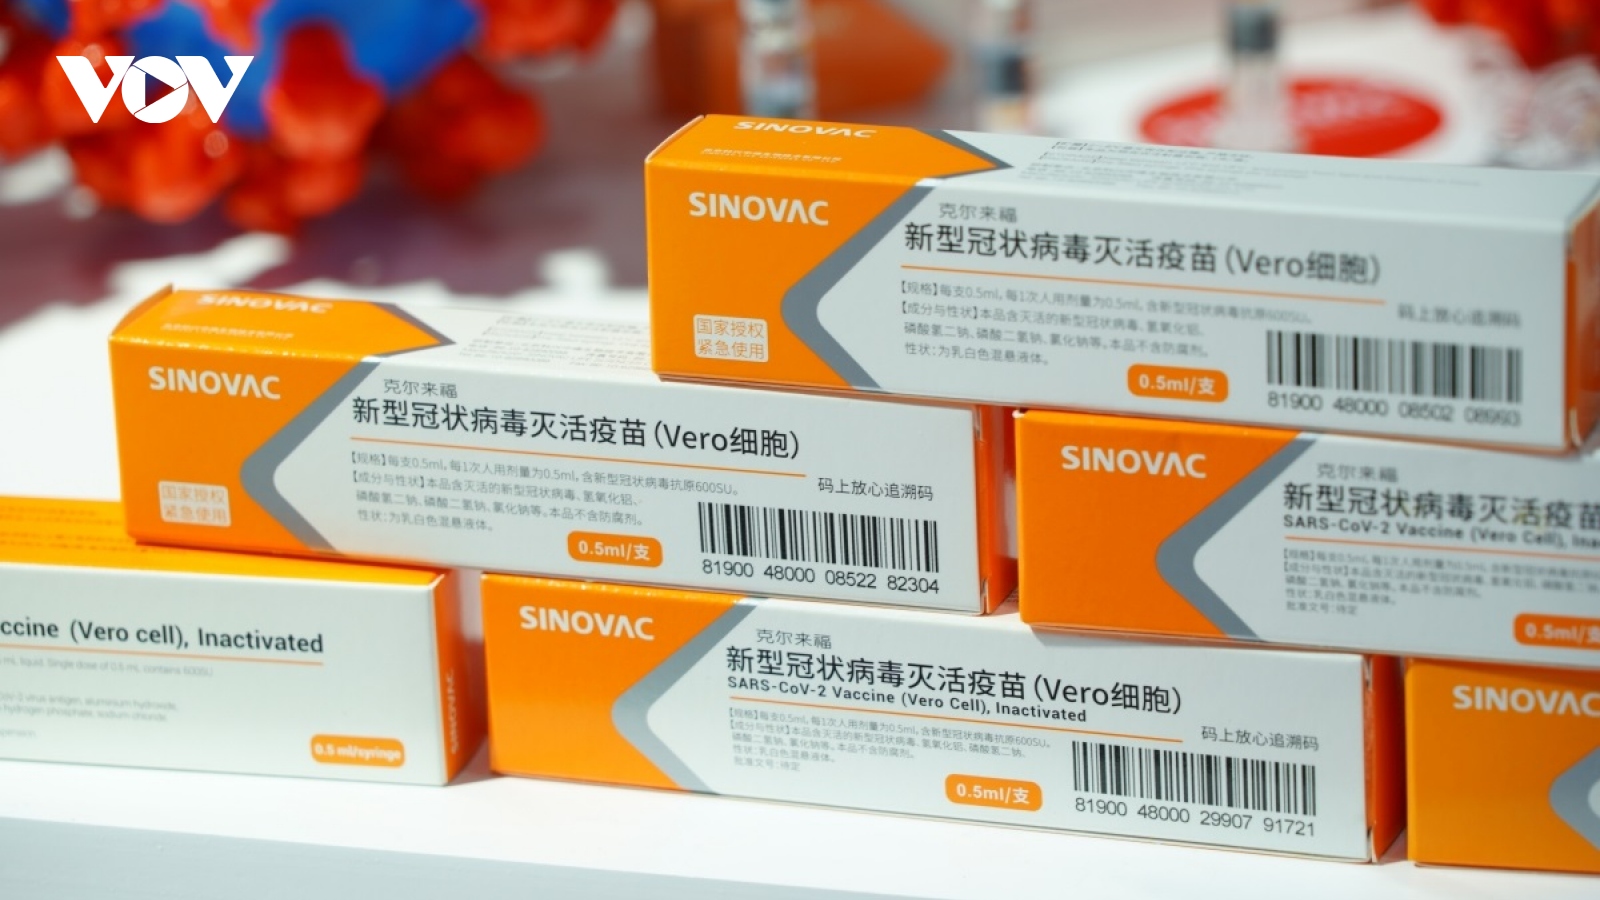 Trung Quốc viện trợ và cung cấp vaccine Covid-19 cho ít nhất 8 nước ASEAN